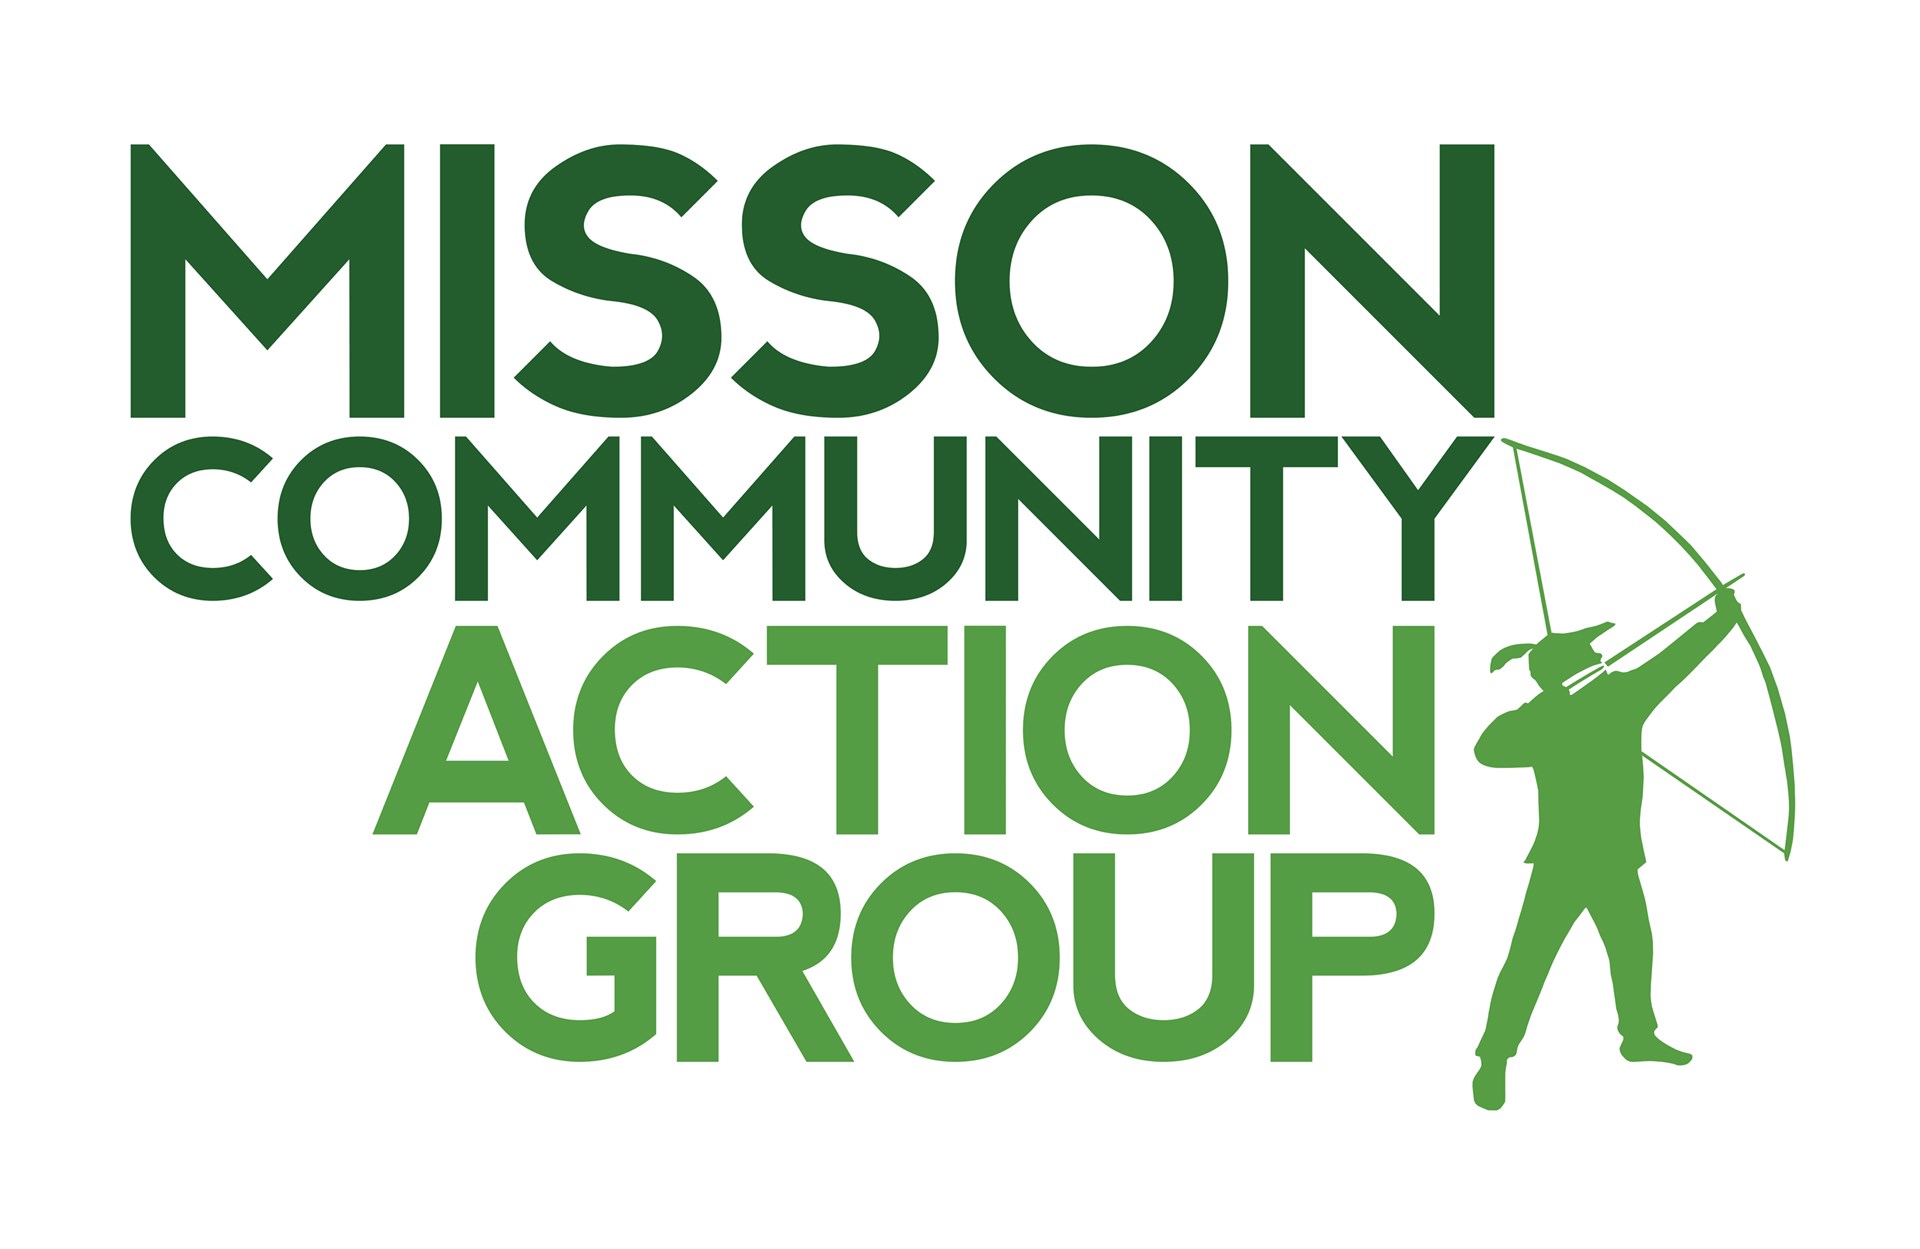 Misson Parish Council Misson Comm. Action Group